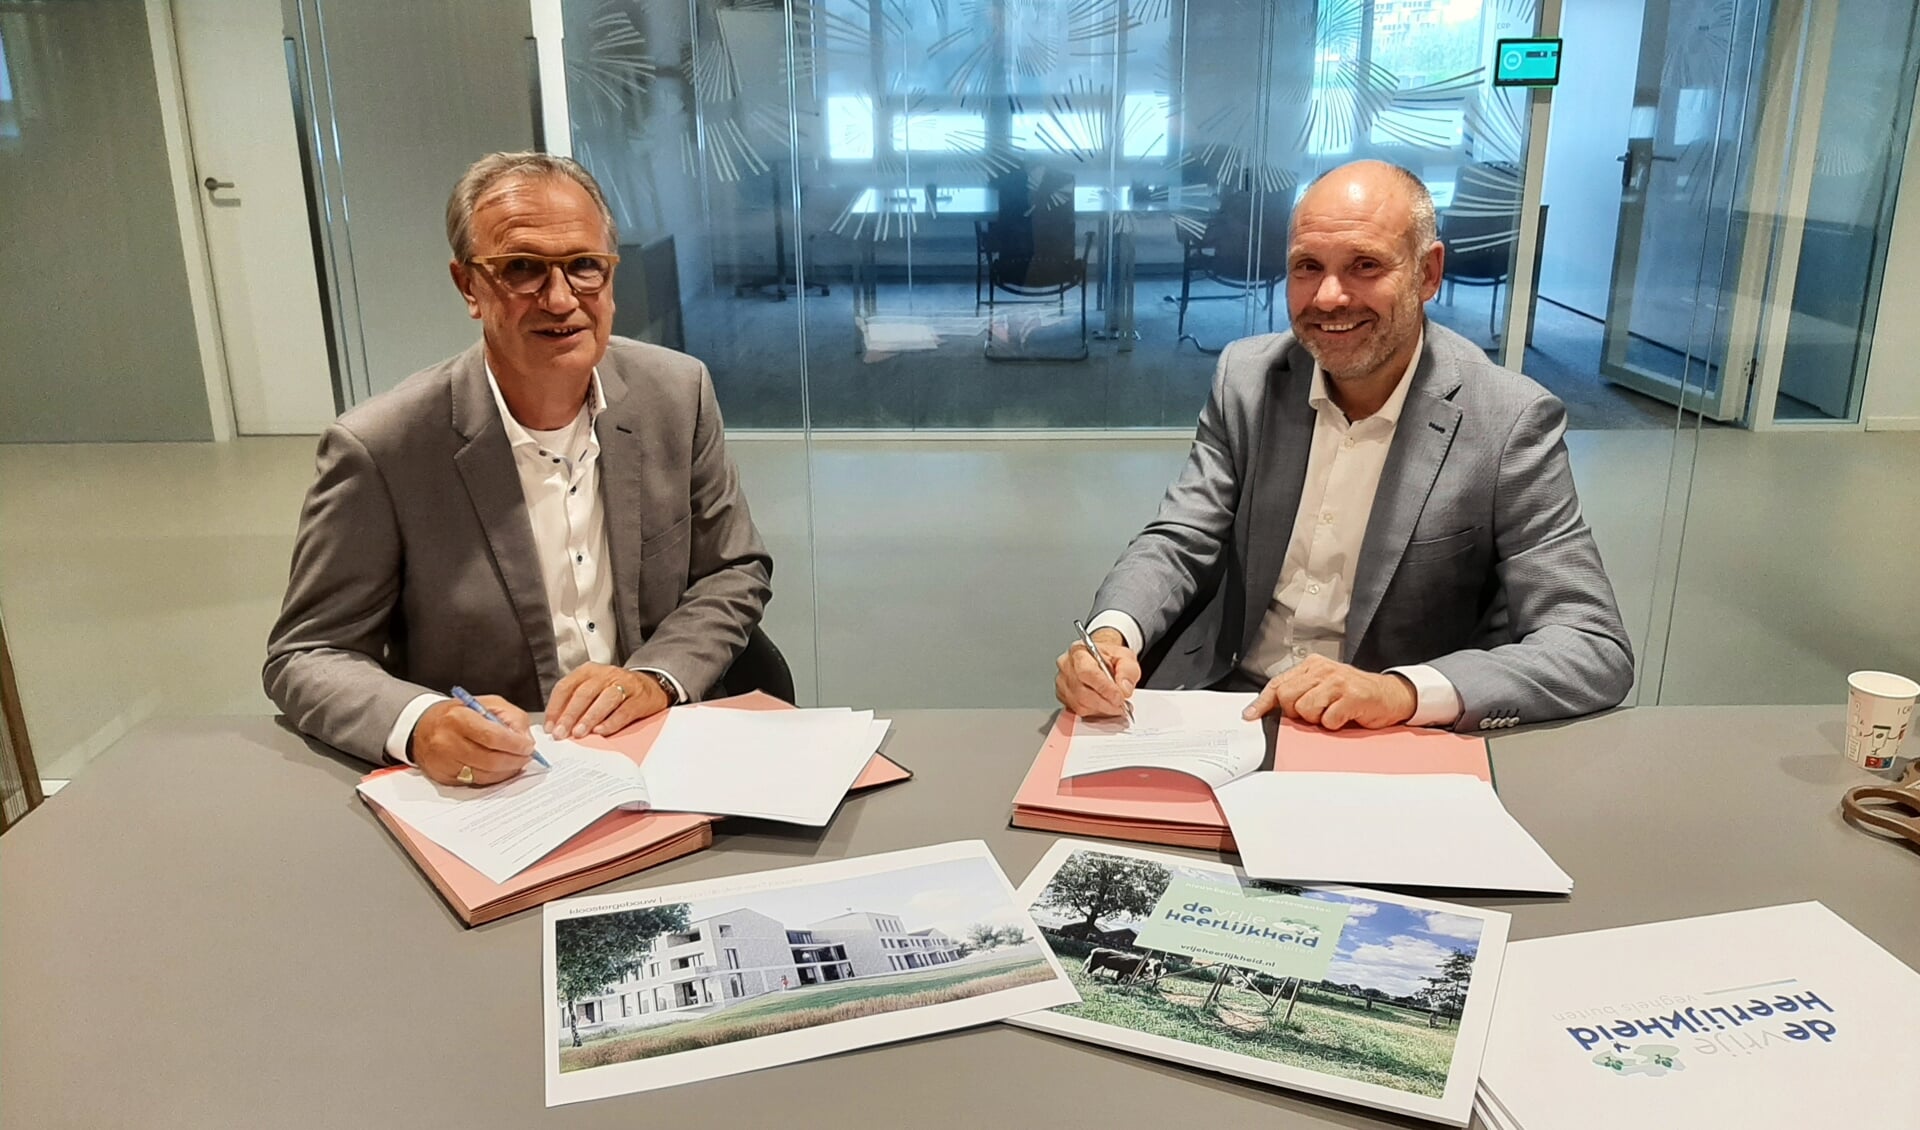 Wethouder Jan Goijaarts en Robert Hellings van Cedrus Vastgoed tekenen de koopovereenkomst.